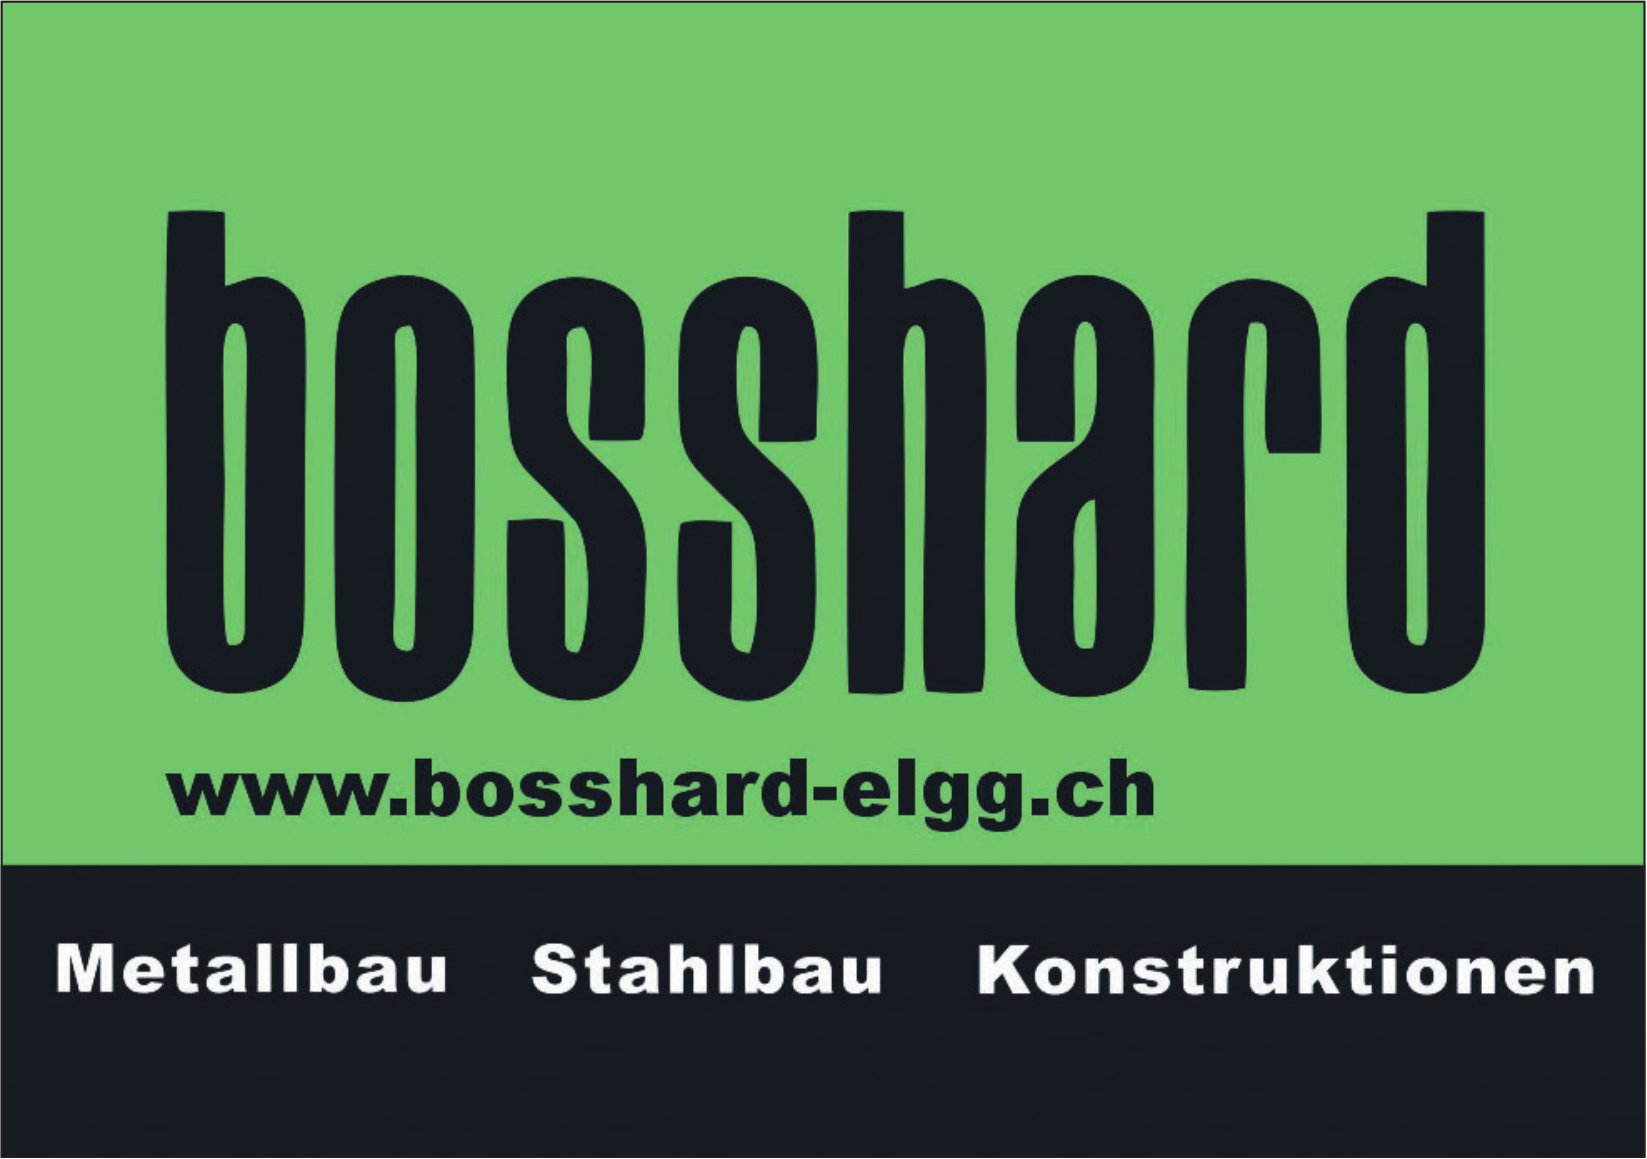 Bosshard, Elgg - Anbau/Umbau, Sanierungen, Renovationen...